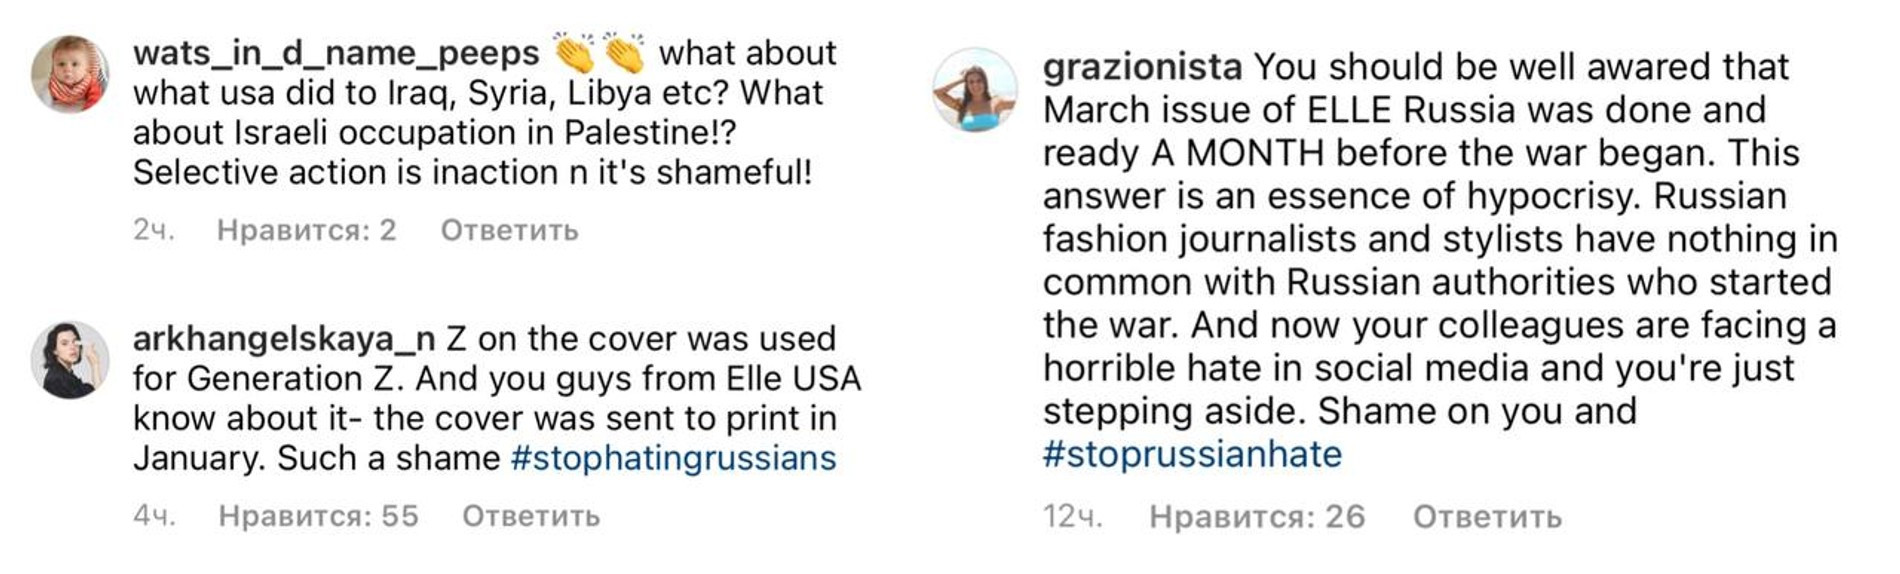 Фото: комментарии под постом в Инстаграме (запрещен на территории РФ) американского Elle